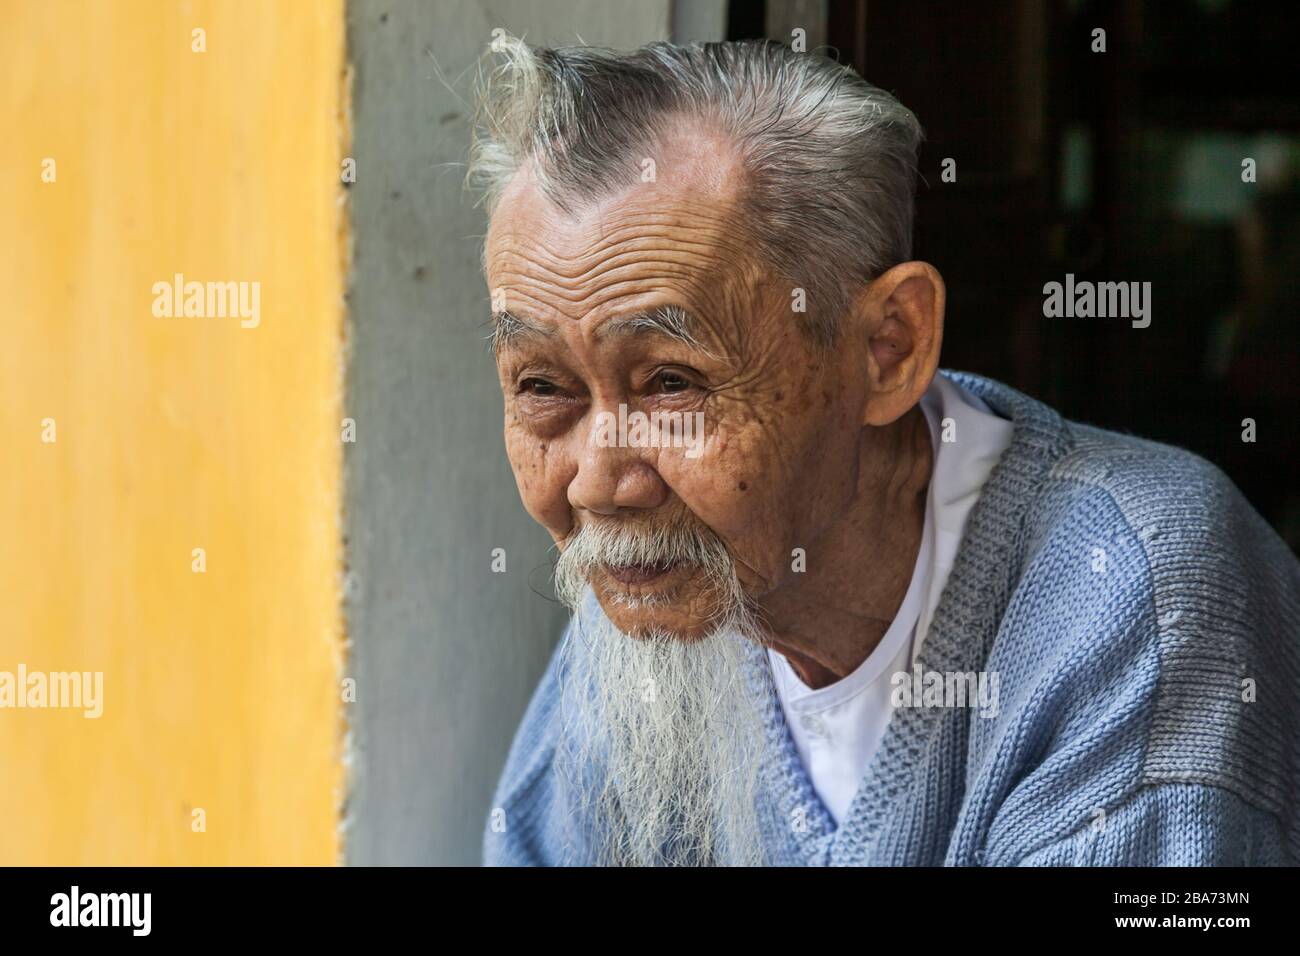 Old Vietnamese man in doorway Stock Photo